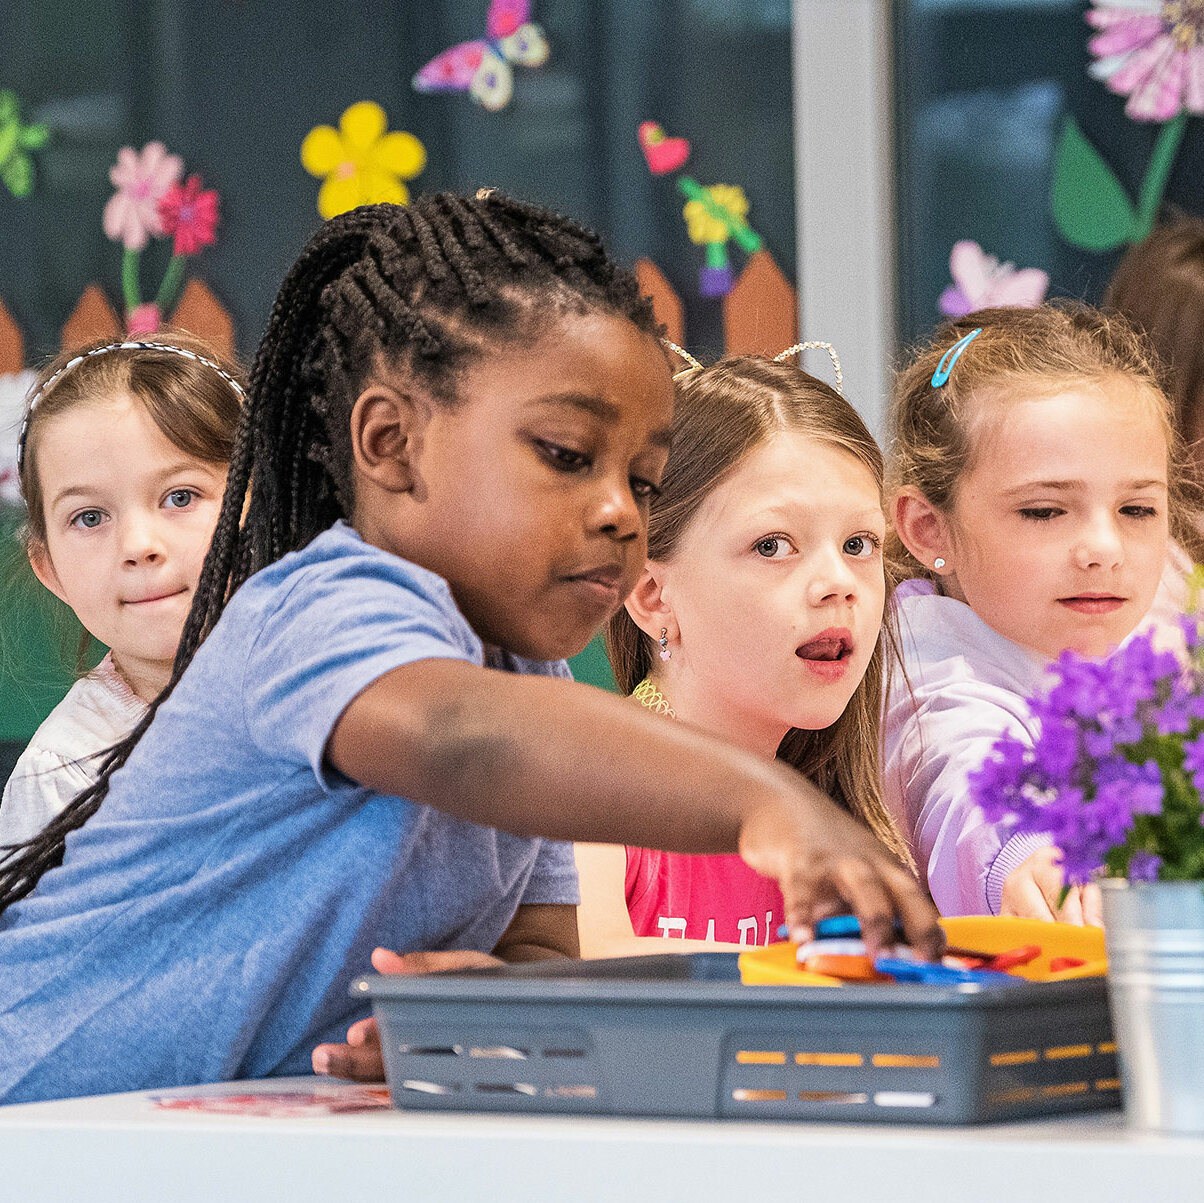 Sechs kleine Mädchen sitzen an einem Tisch. Ein Mädchen greift nach einem Stift aus einer grauen Box. Es sind zwei kleine Blumentöpfe zu sehen.